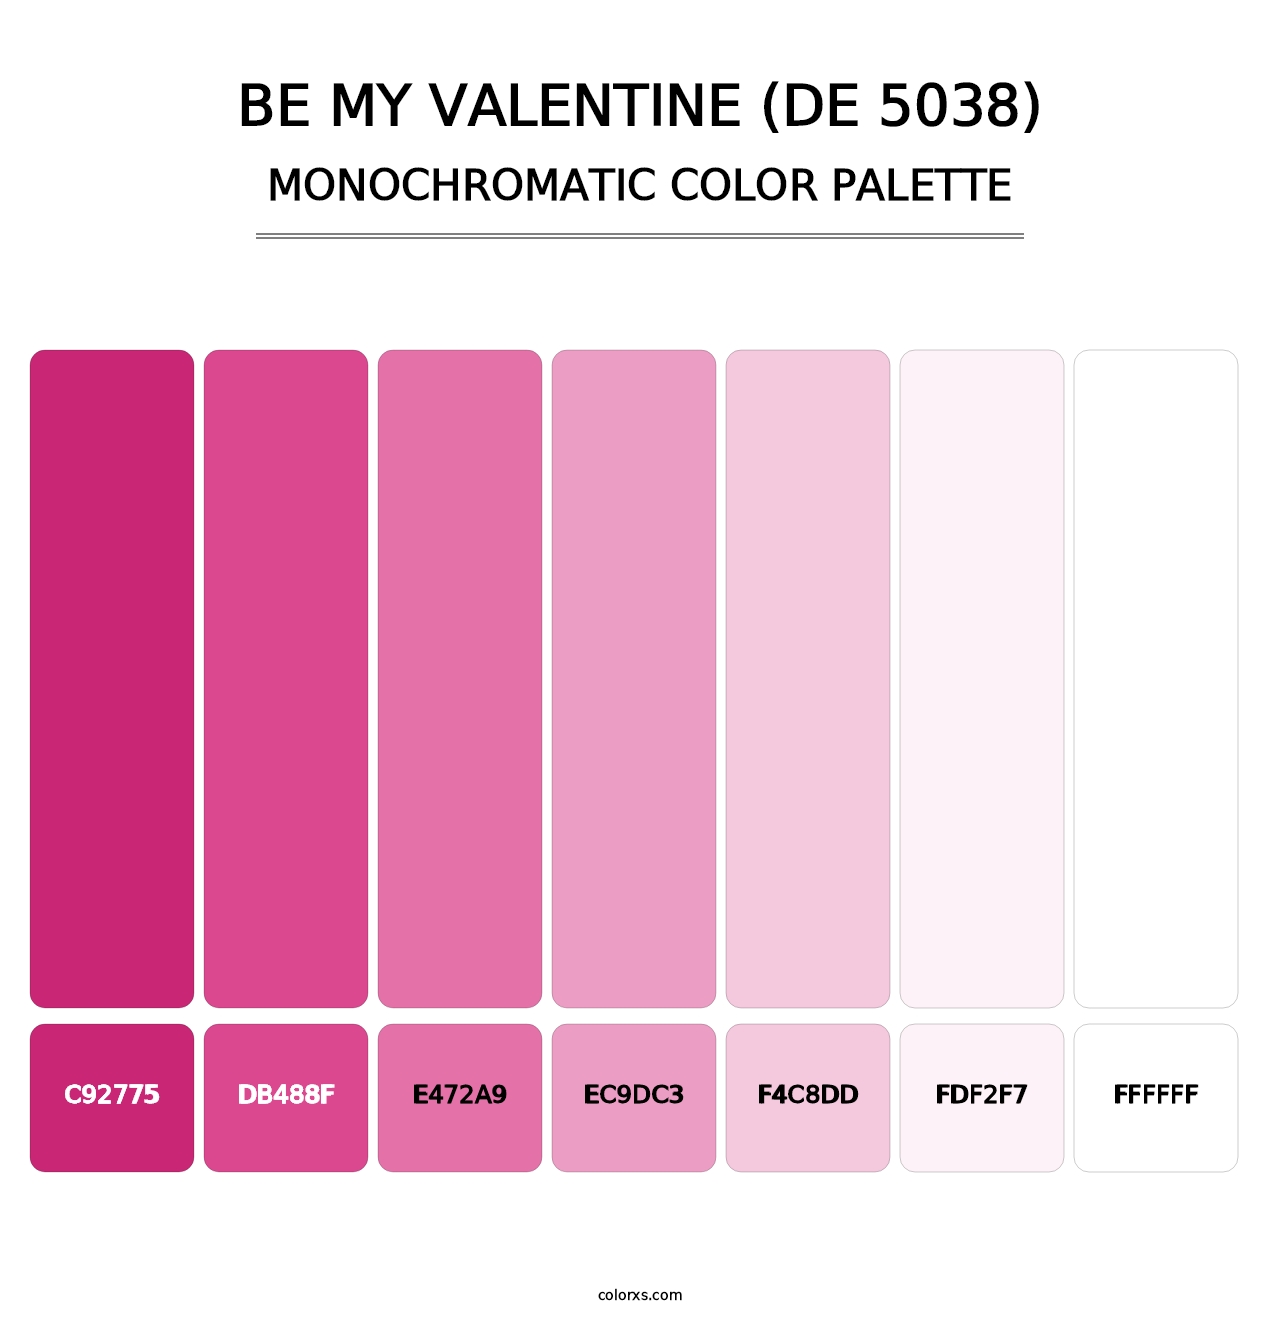 Be My Valentine (DE 5038) - Monochromatic Color Palette